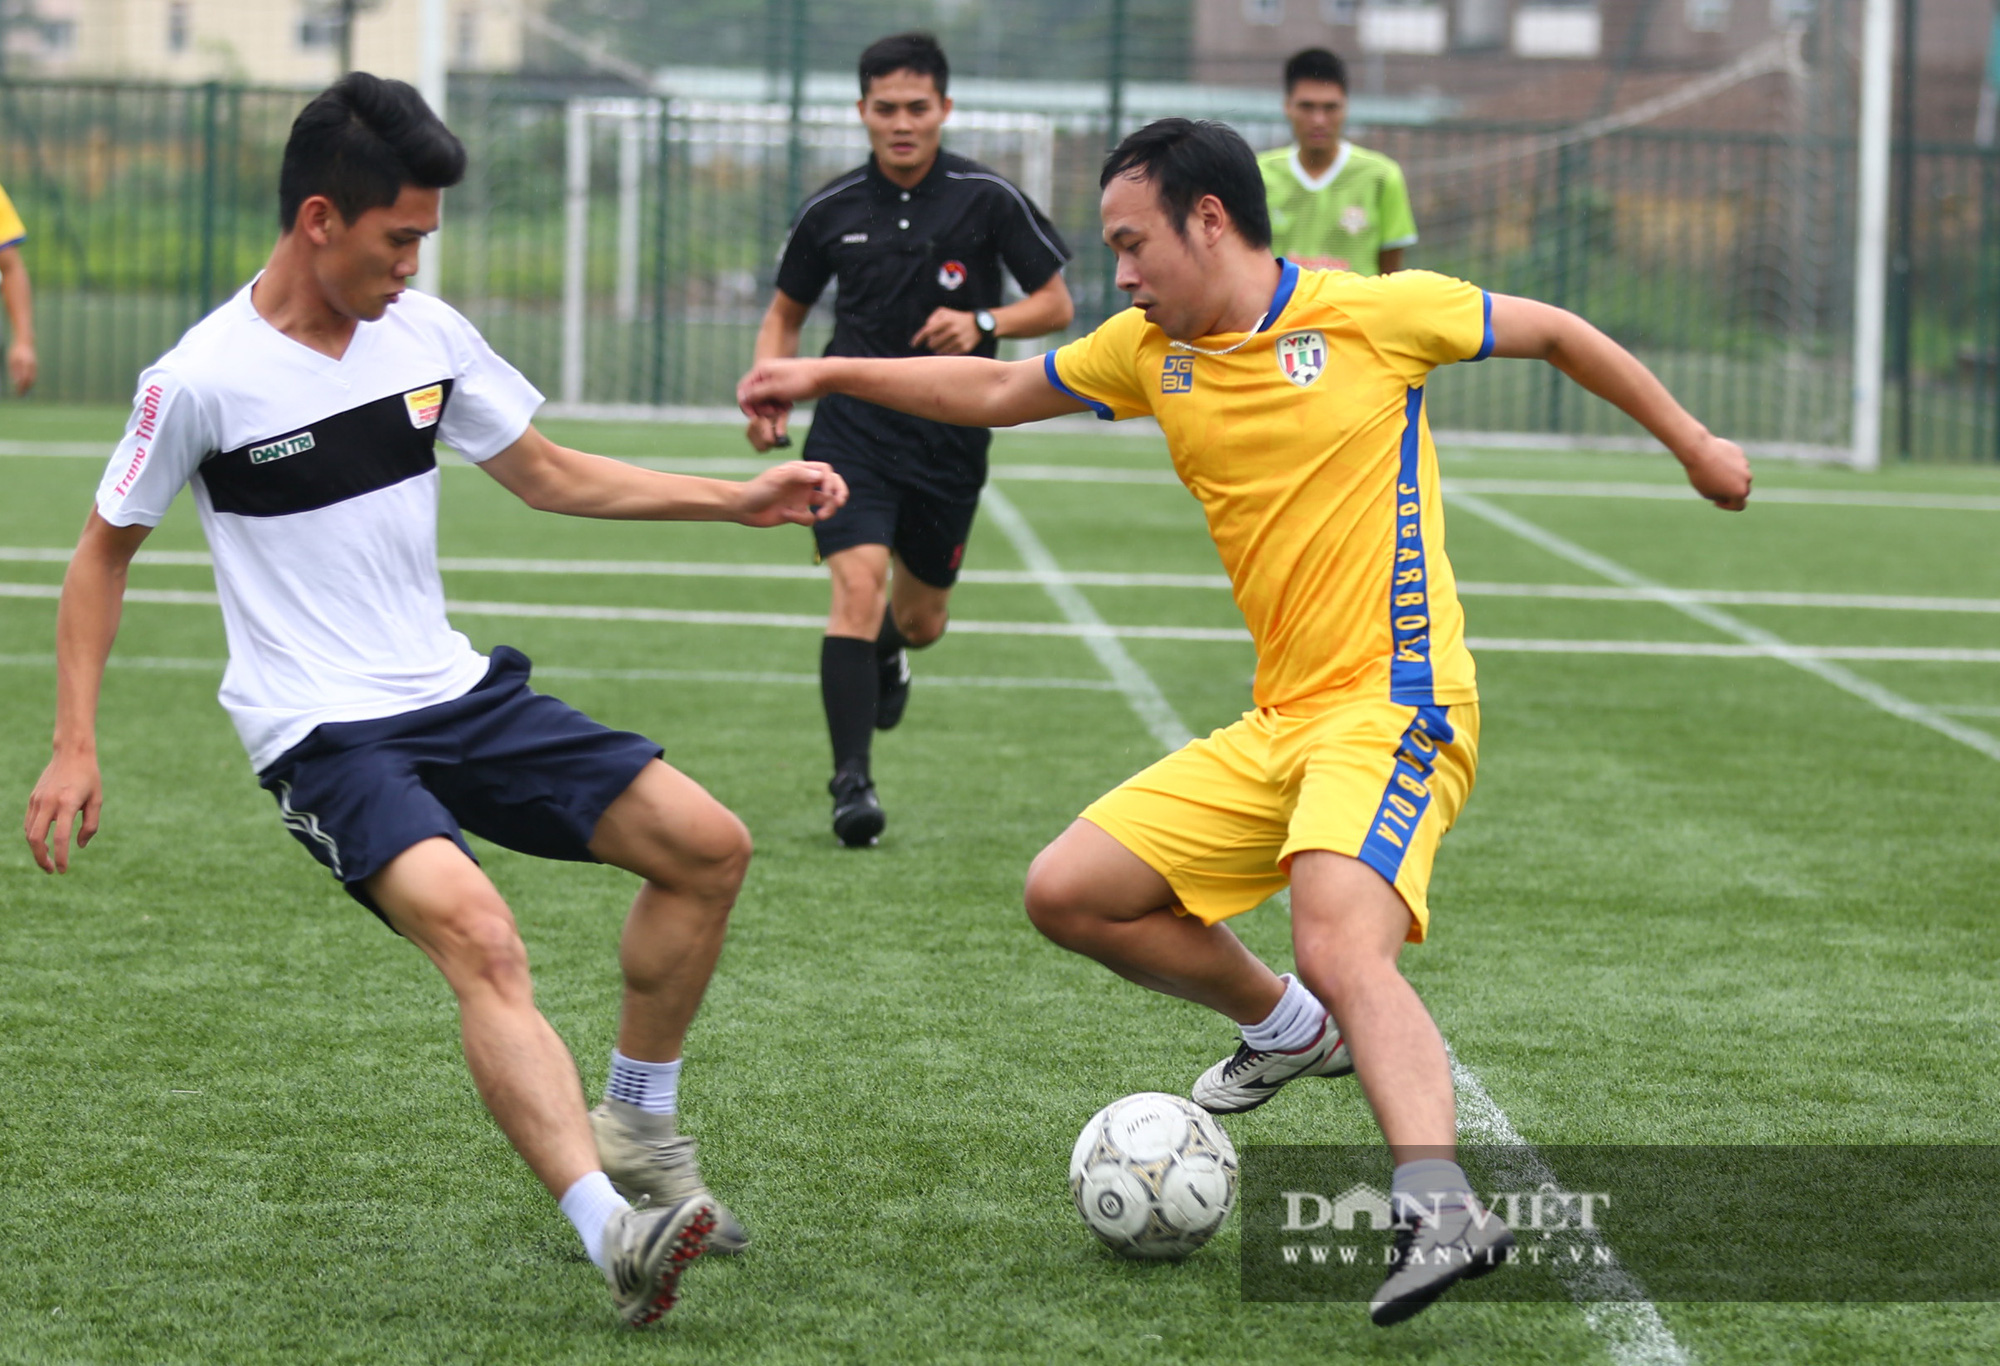 Khoảnh khắc lượt trận cuối cùng vòng bảng giải bóng đá báo NTNN/Dân Việt  - Ảnh 8.